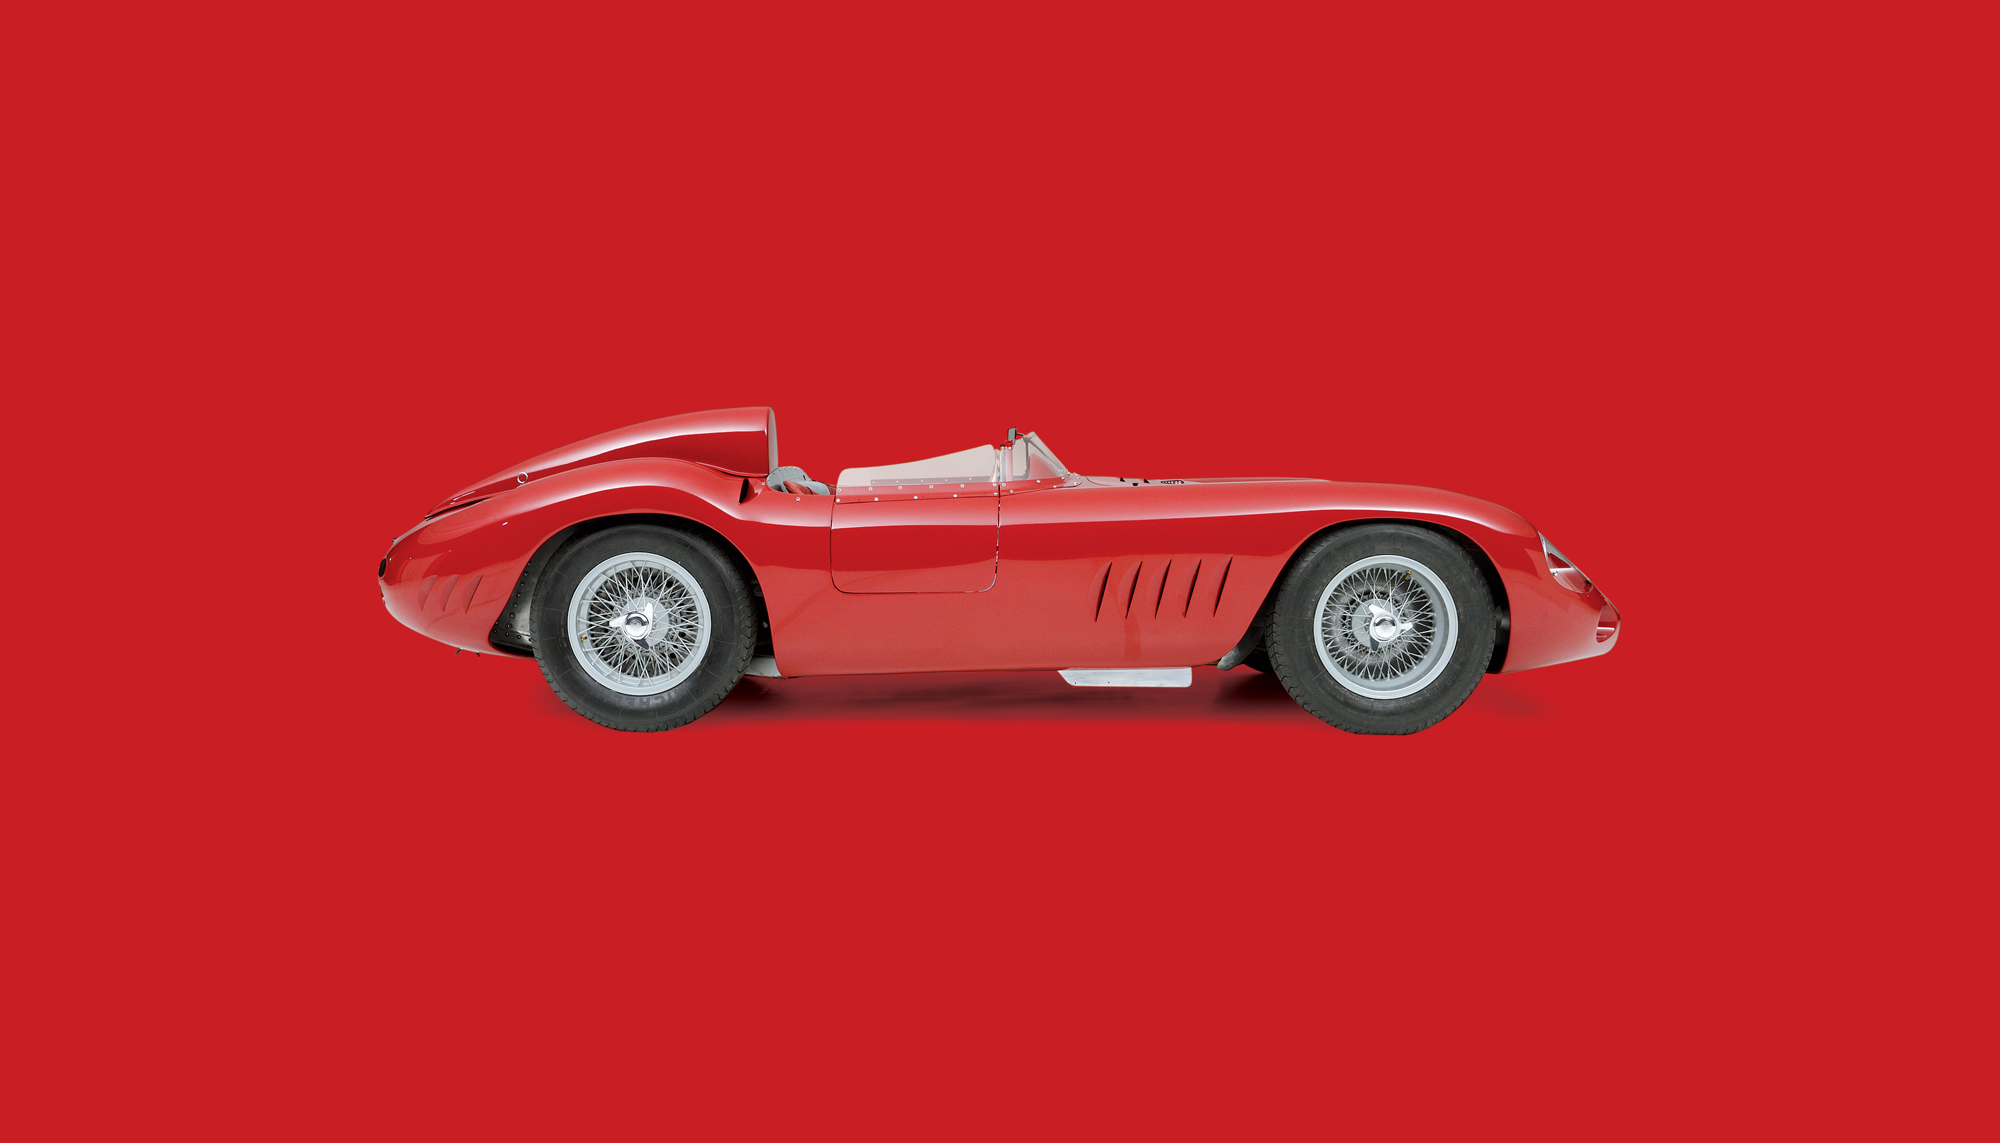 Bekijk Maserati 300S in het Louwman Museum